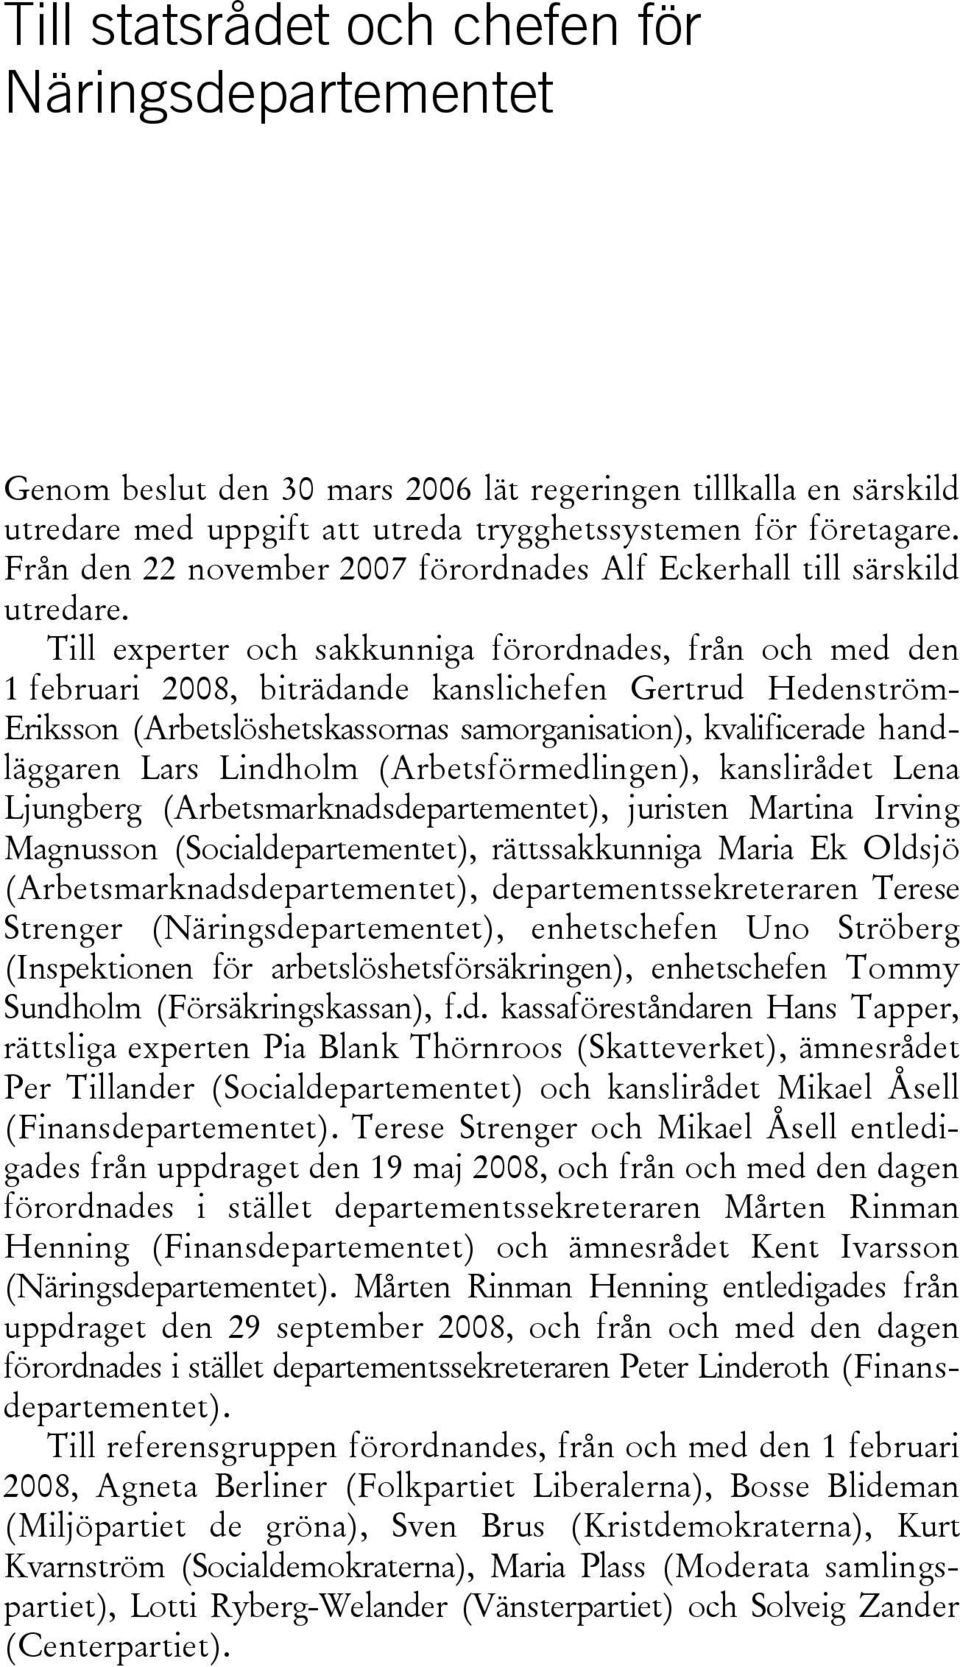 Till experter och sakkunniga förordnades, från och med den 1 februari 2008, biträdande kanslichefen Gertrud Hedenström- Eriksson (Arbetslöshetskassornas samorganisation), kvalificerade handläggaren